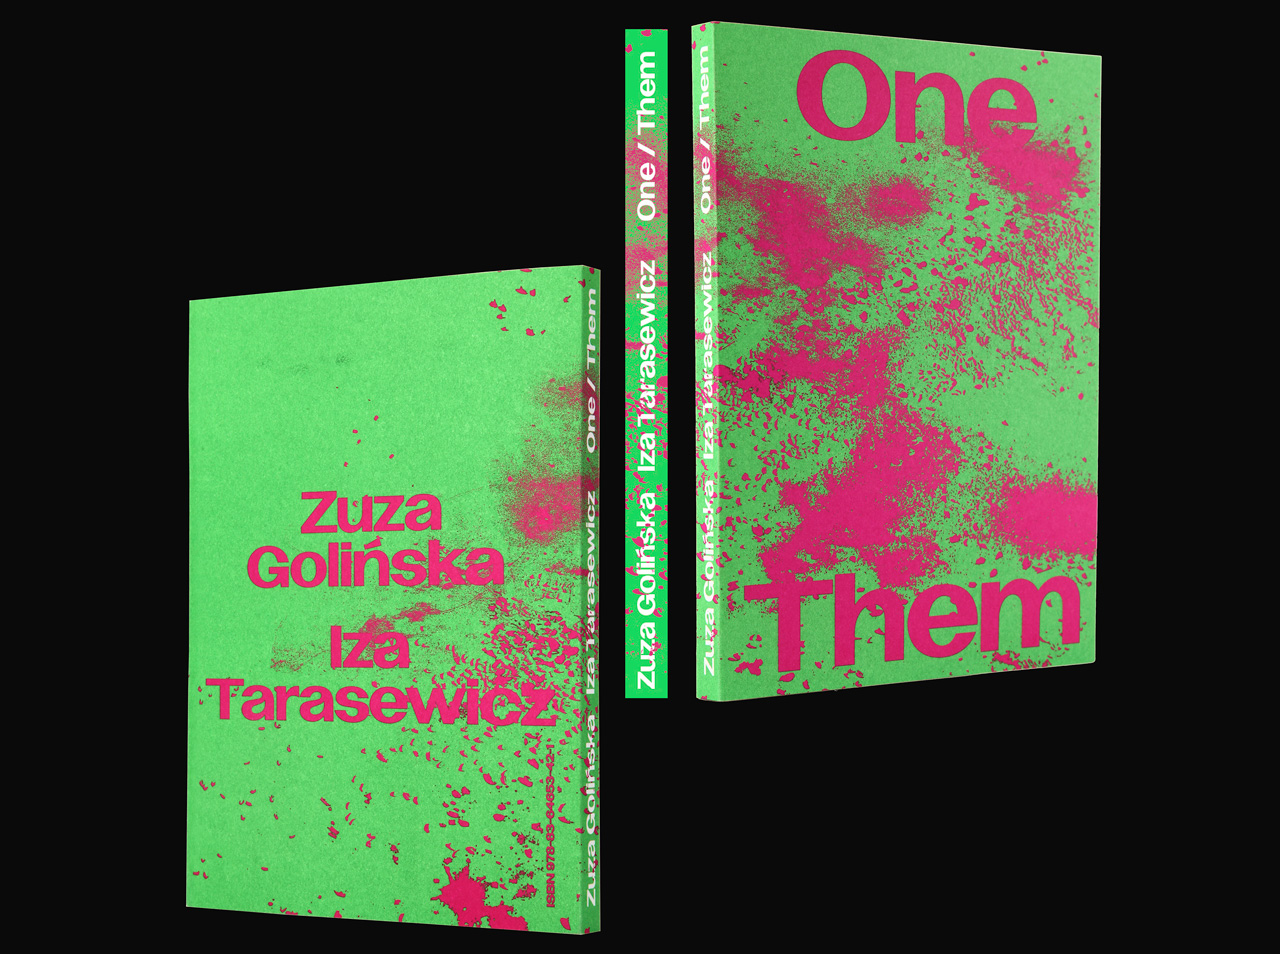 Zuza Golińska, Iza Tarasewicz: ONE / THEM